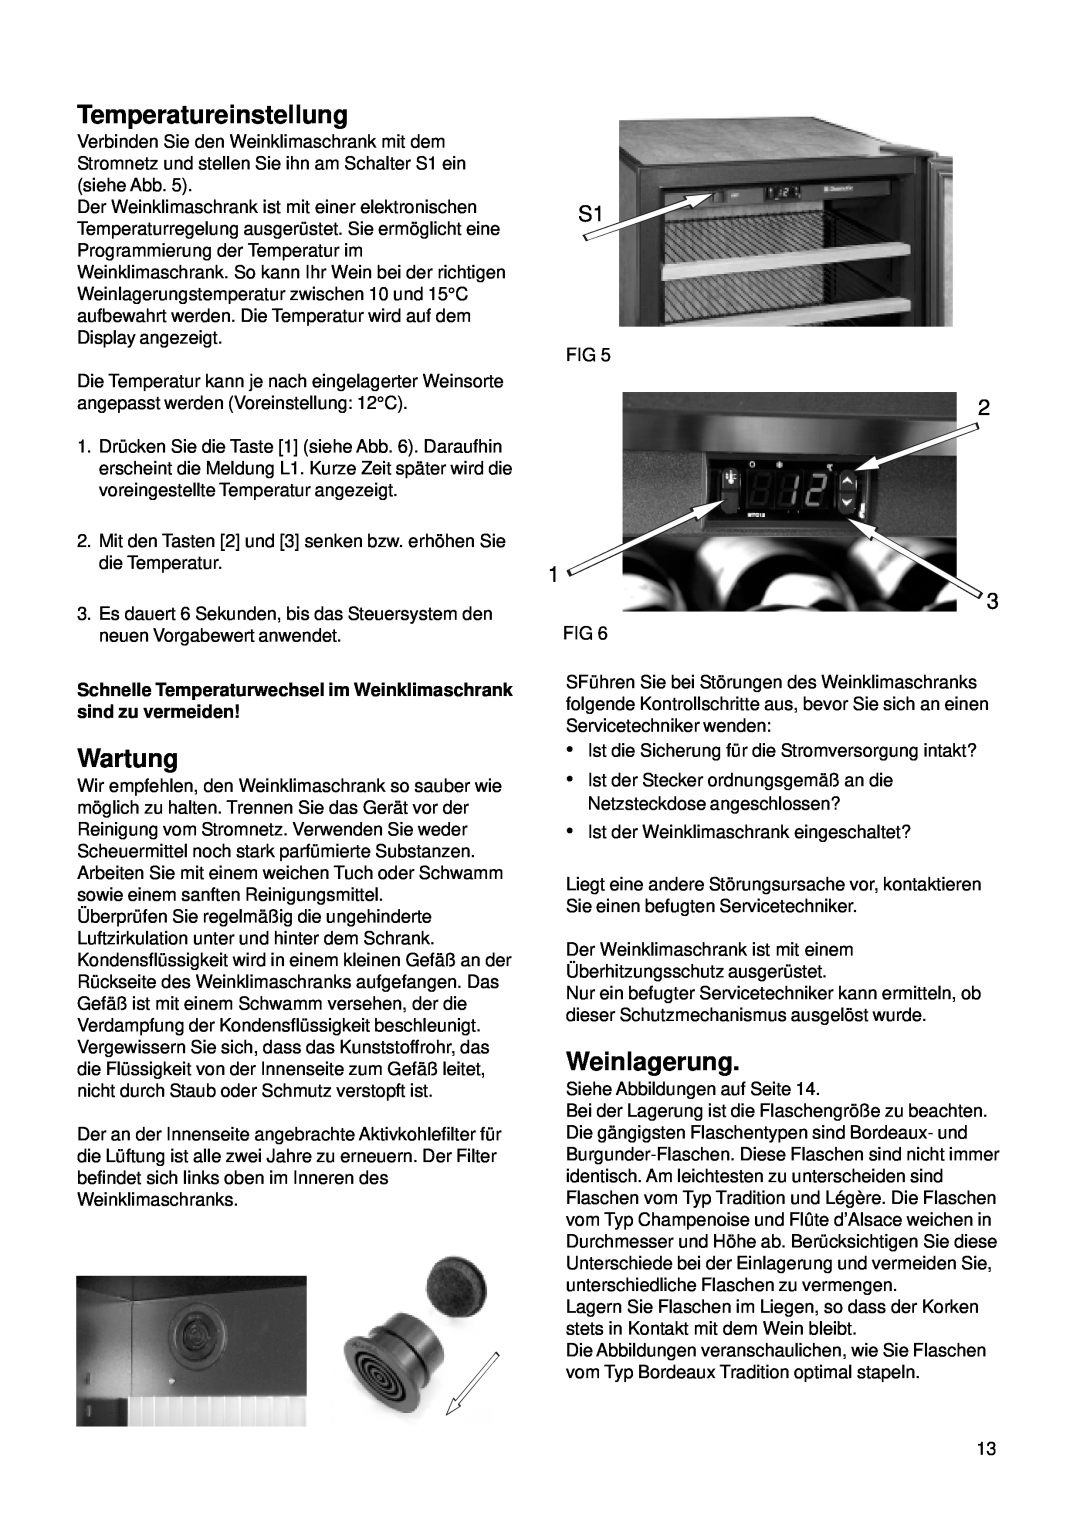 Dometic CS 52 instruction manual Temperatureinstellung, Wartung, Weinlagerung 